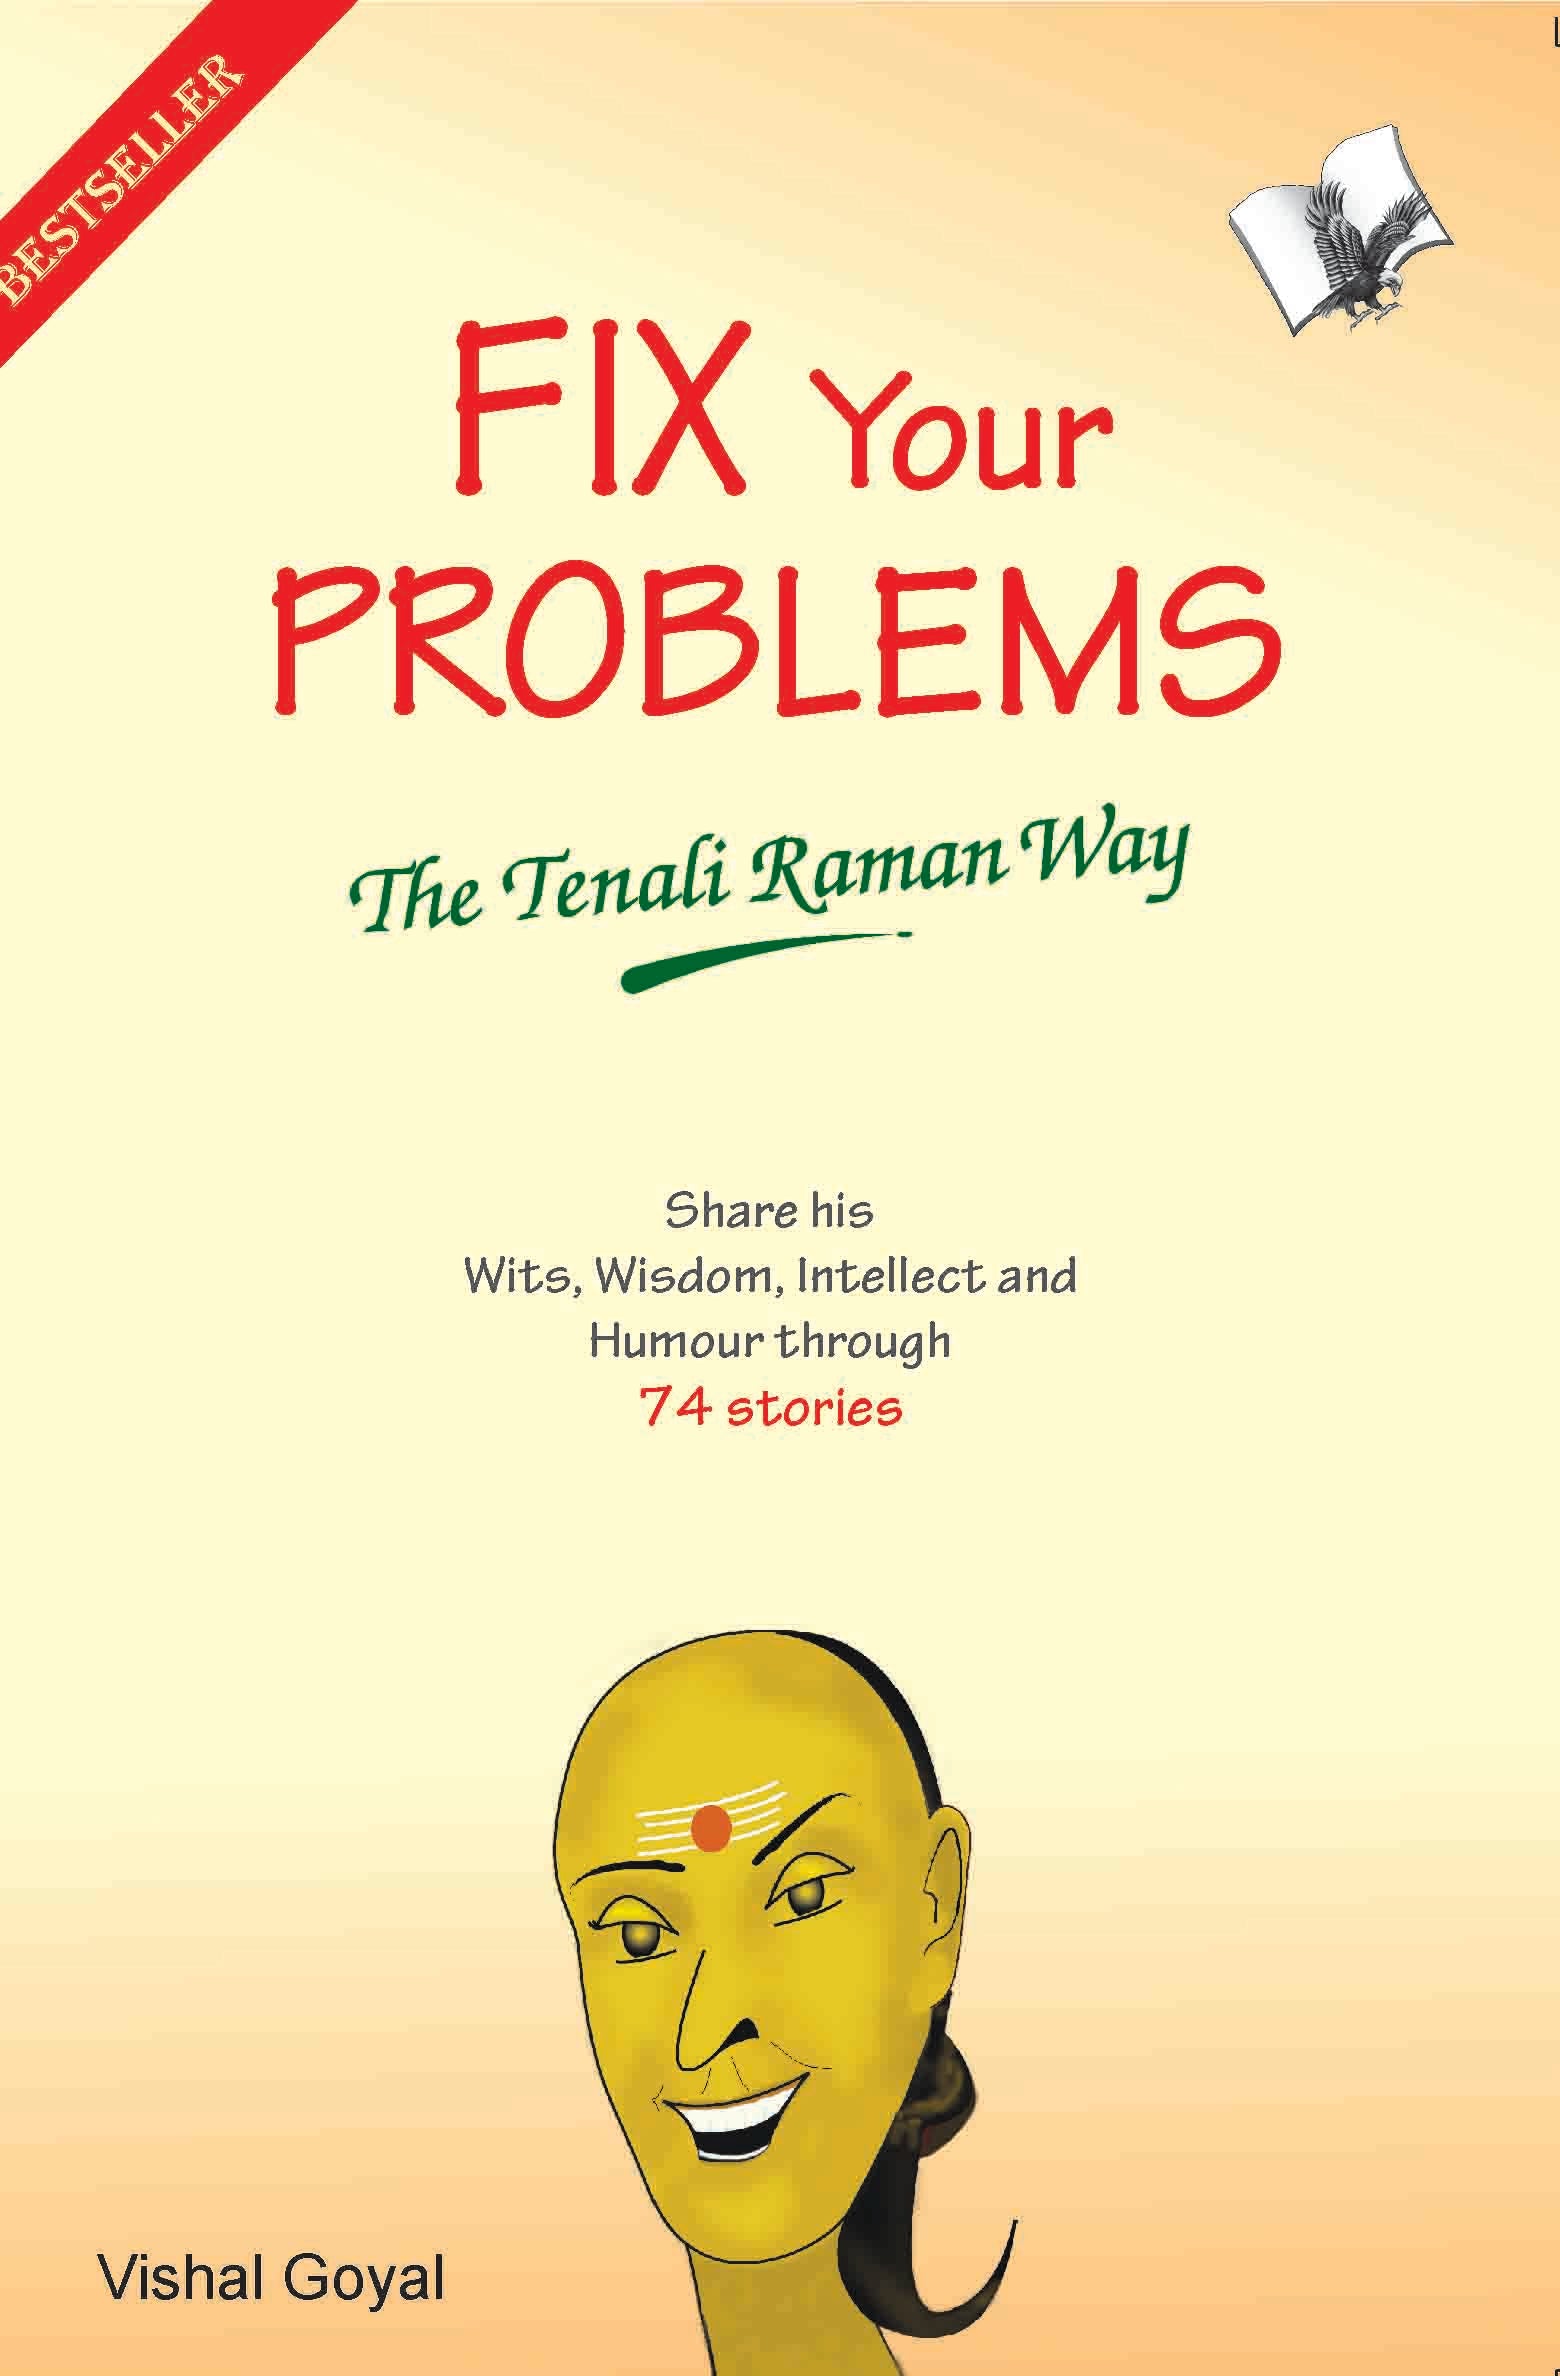 Fix Your Problems - The Tenali Raman Way